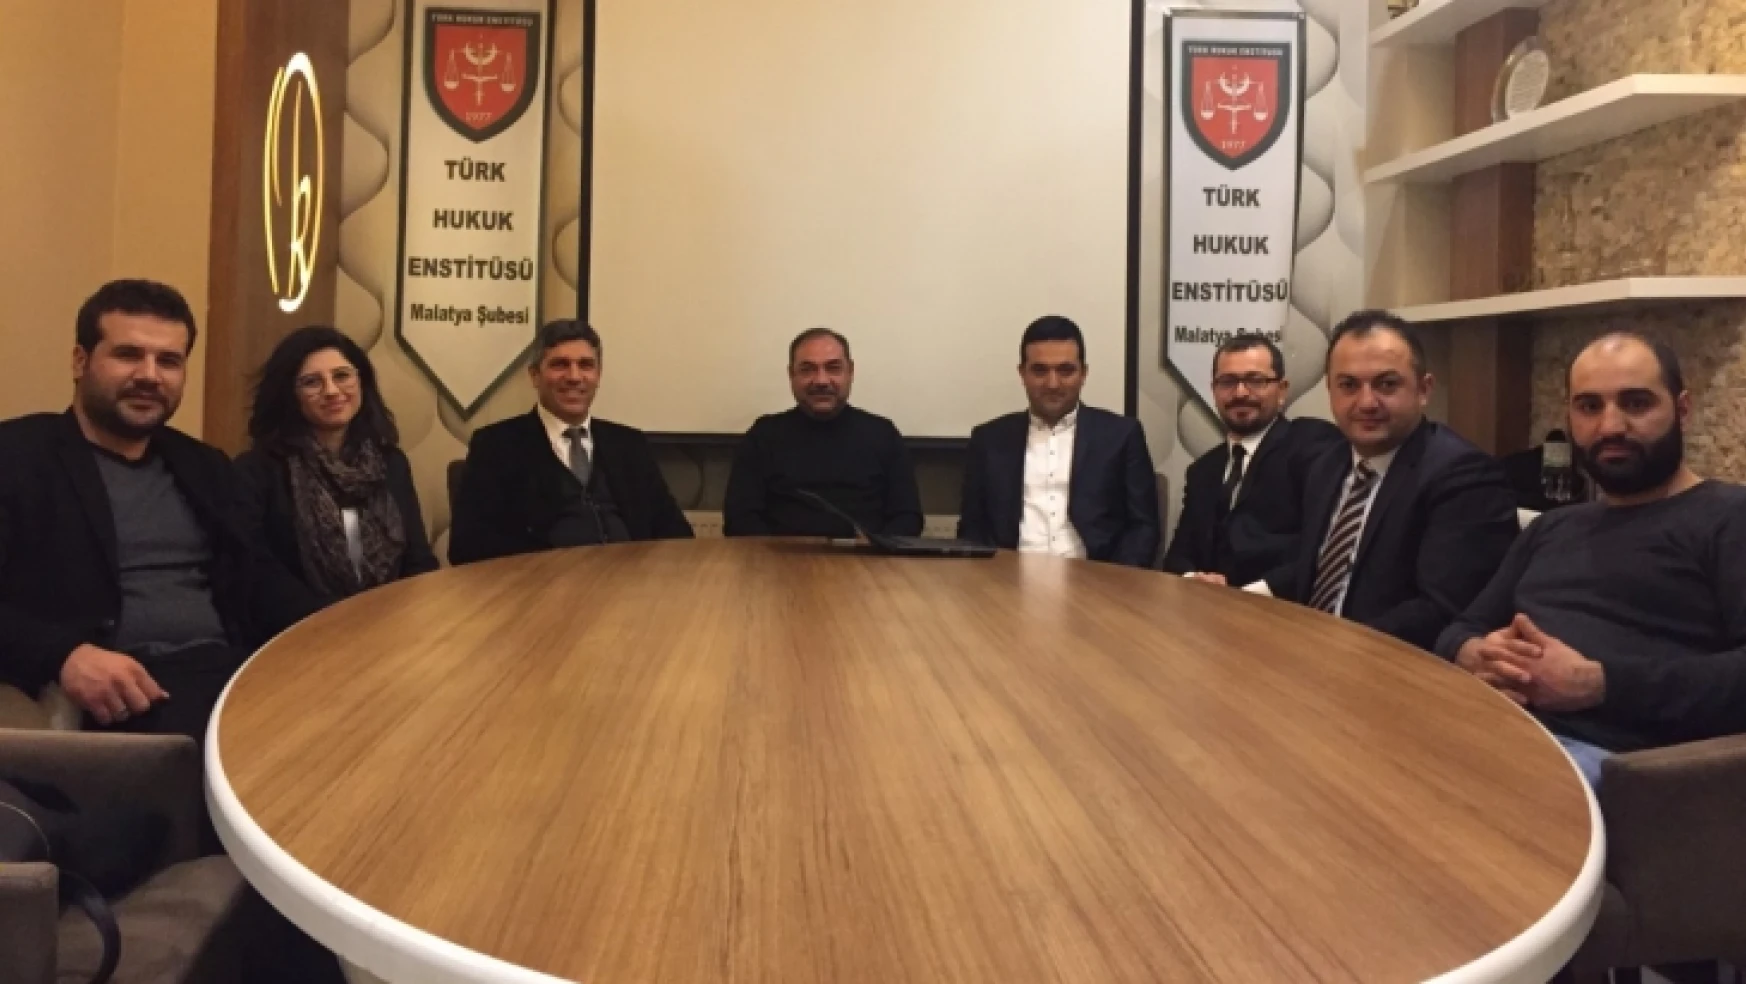 Türk Hukuk Enstitüsü Malatya Şubesi kuruldu